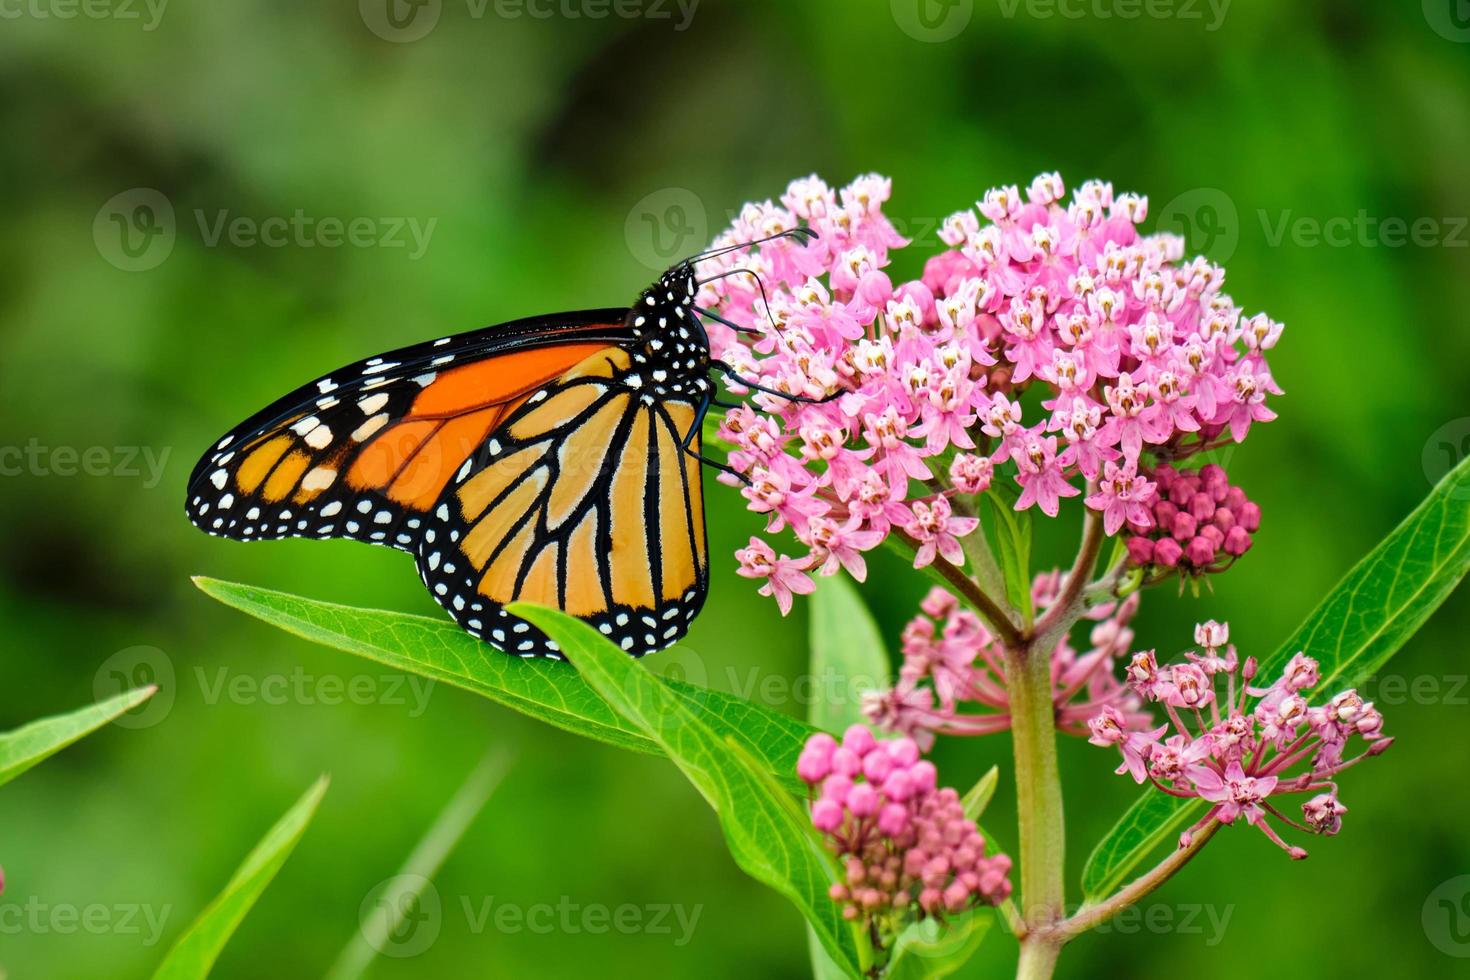 borboleta monarca empoleirada em flores silvestres cor de rosa foto